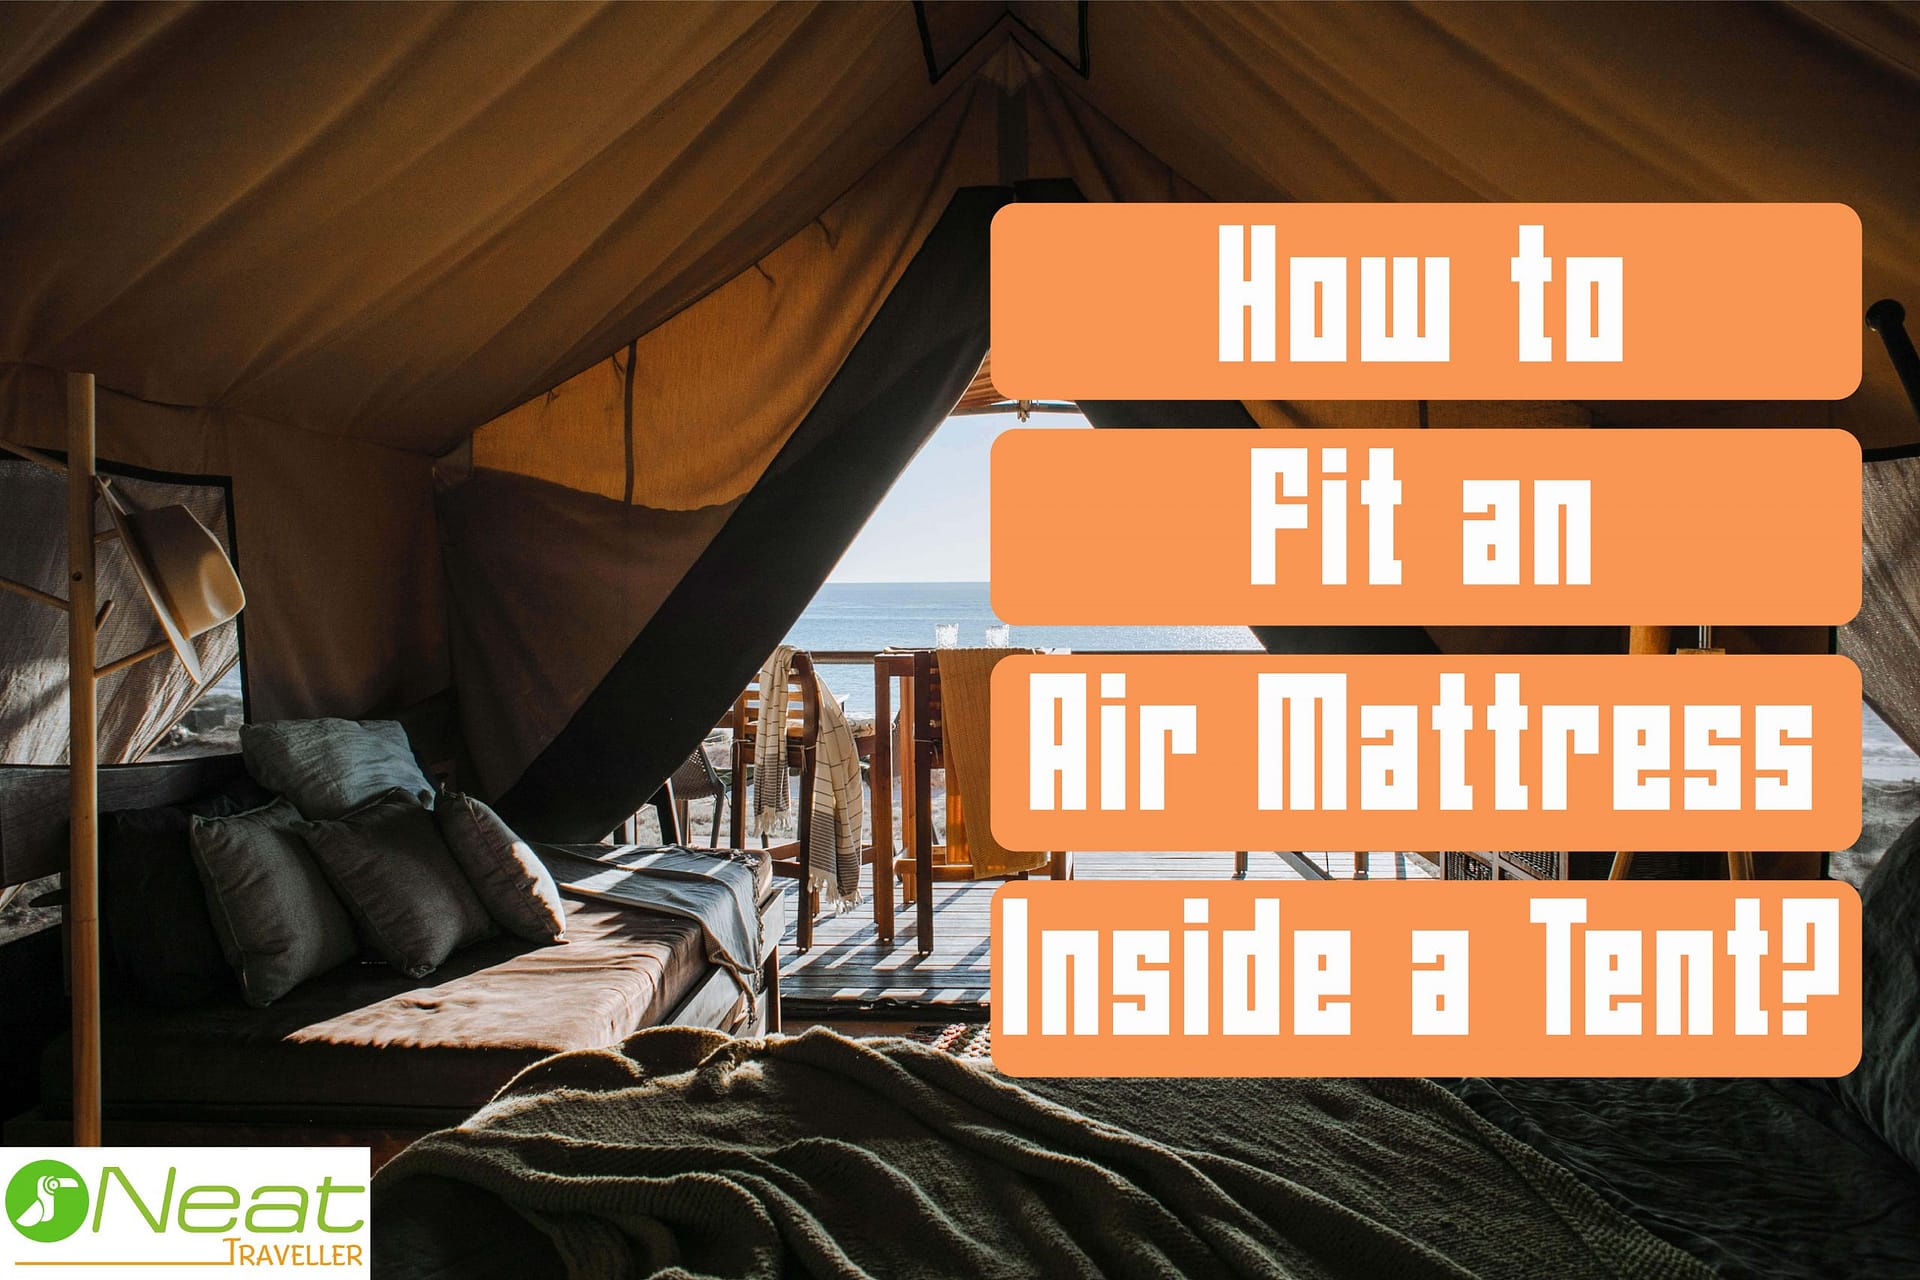 How to Fit an Air Mattress Inside a Tent